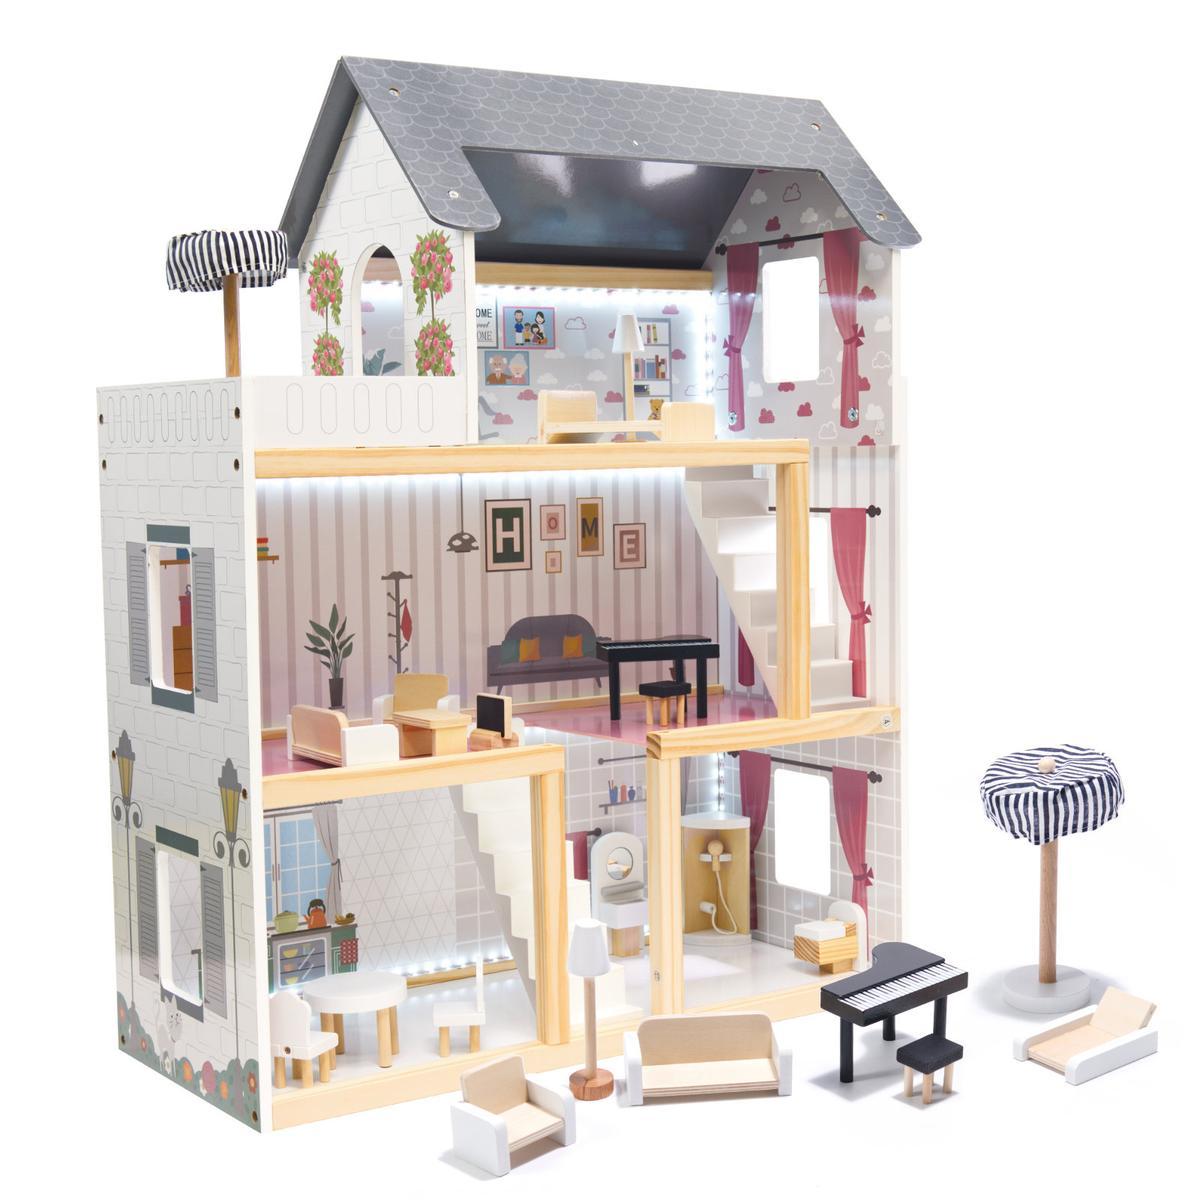 Drewniany domek dla lalek z mebelkami zabawka dla dziewczynki akcesoria MDF LED czarny 62x78x27 cm nr. 1